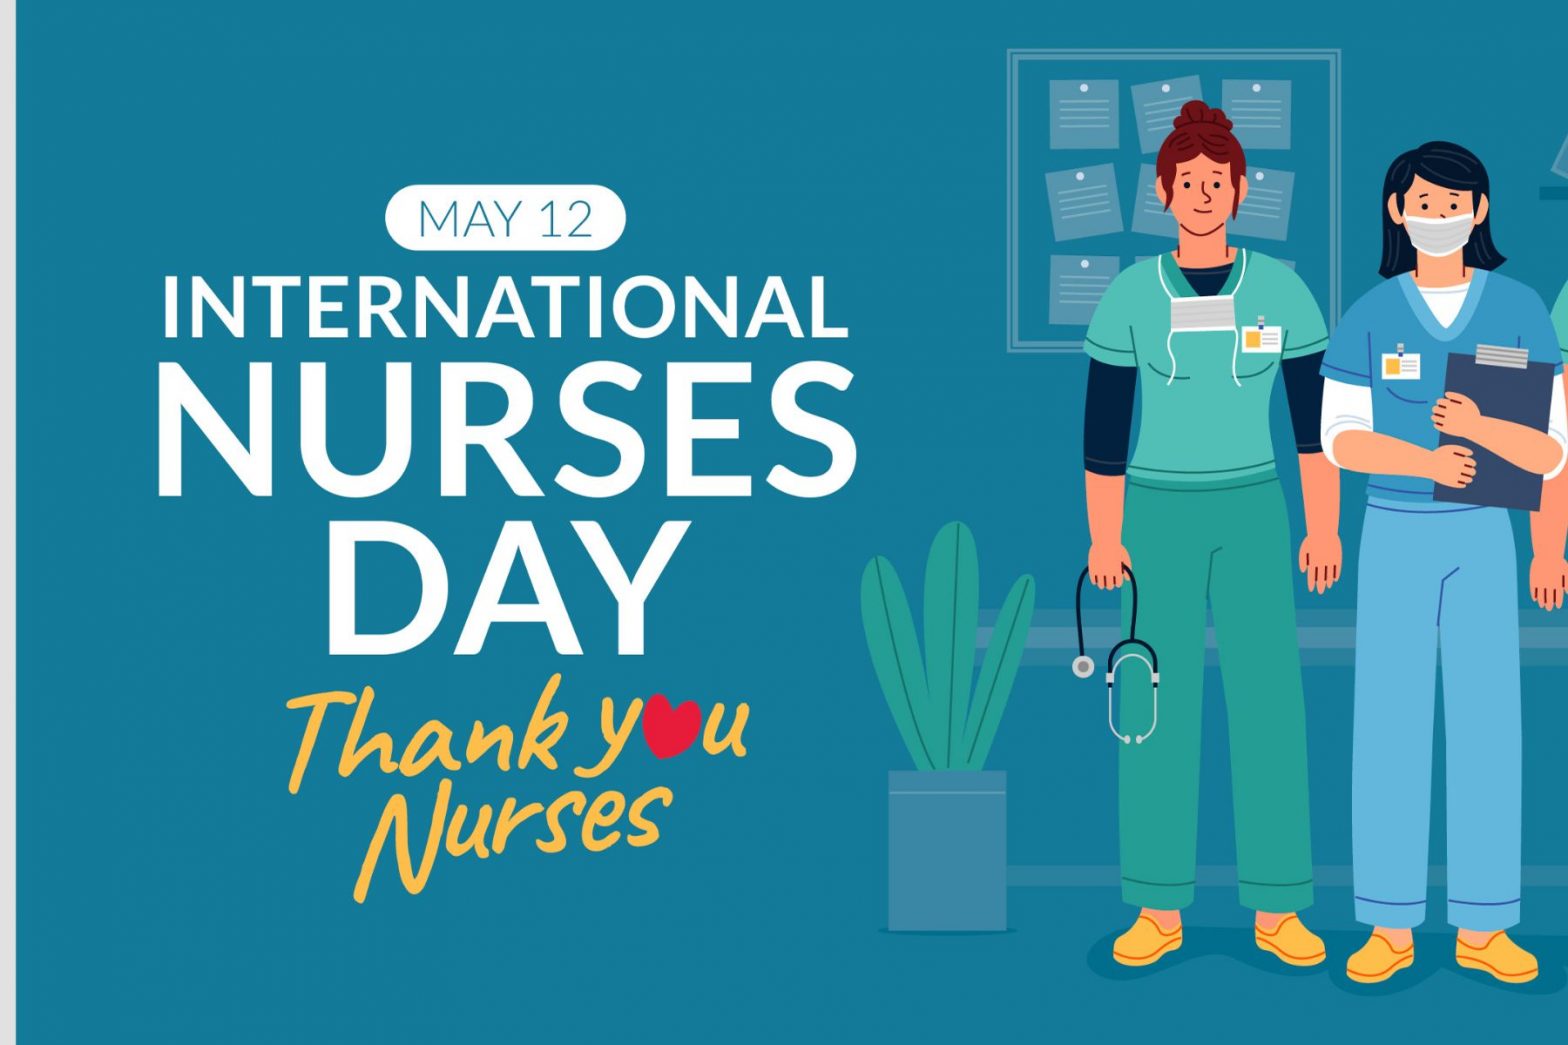 International Nurses Day Quotes in Hindi: अंतर्राष्ट्रीय नर्स दिवस की इन कोट्स के जरिए अपनों को दें शुभकामना